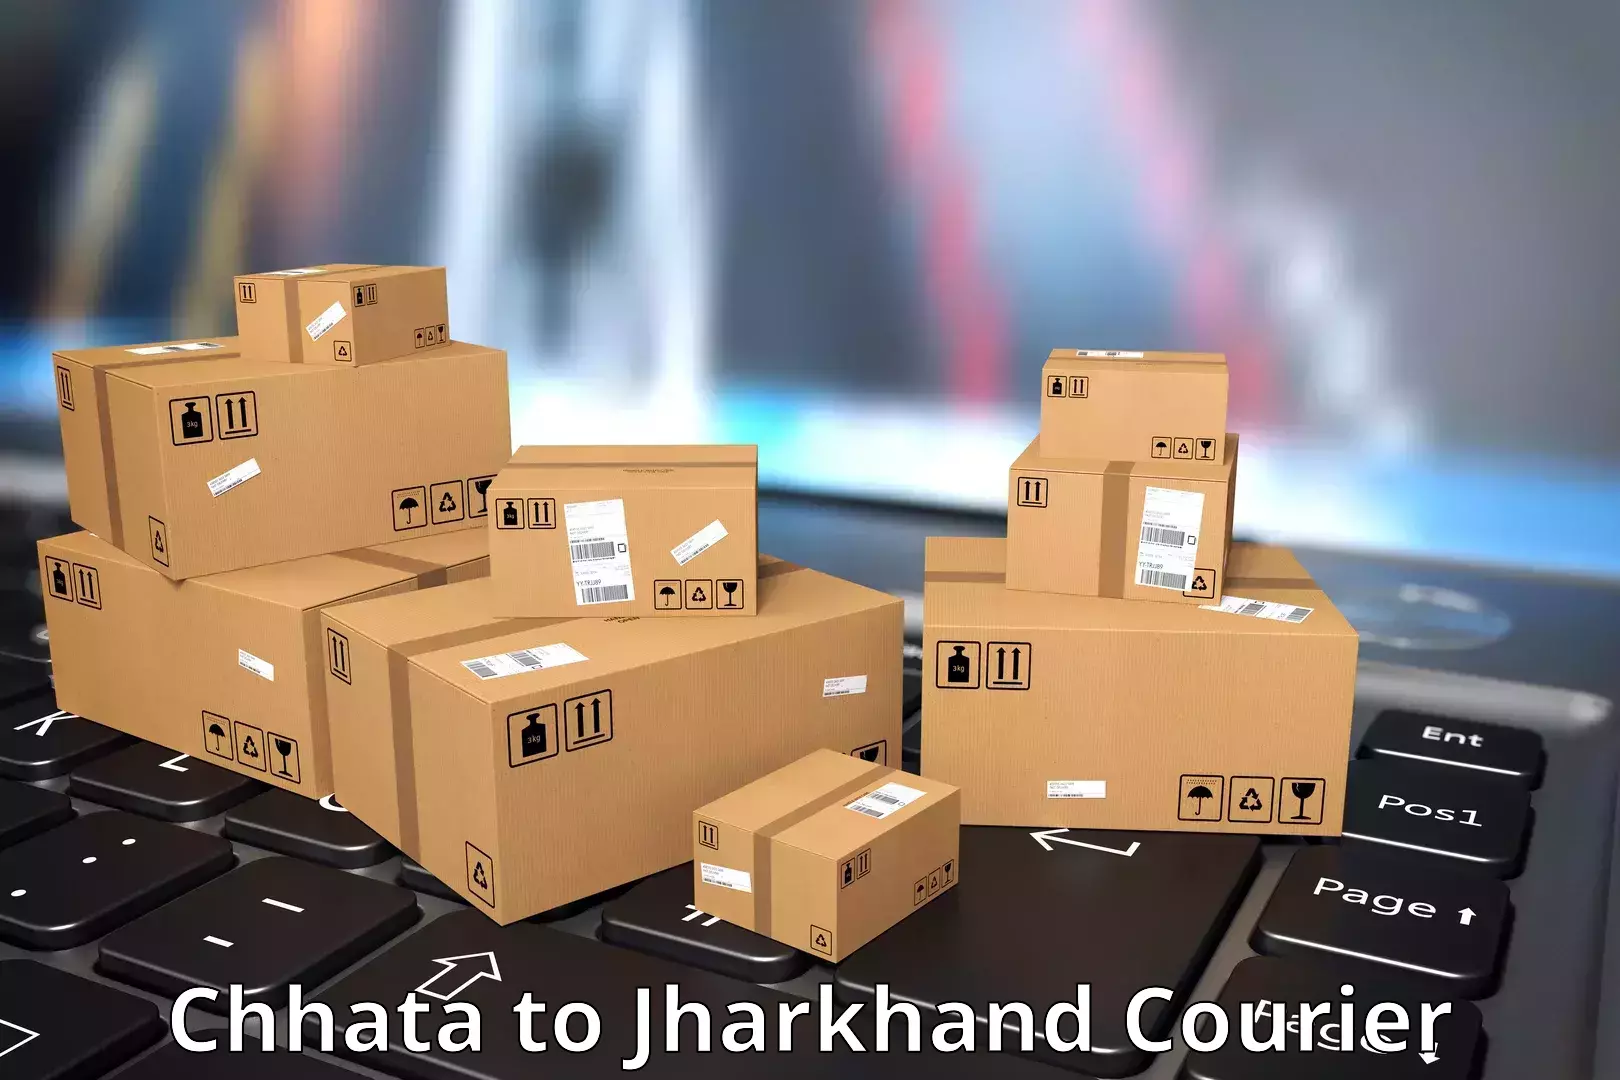 Smart shipping technology Chhata to Chandwa